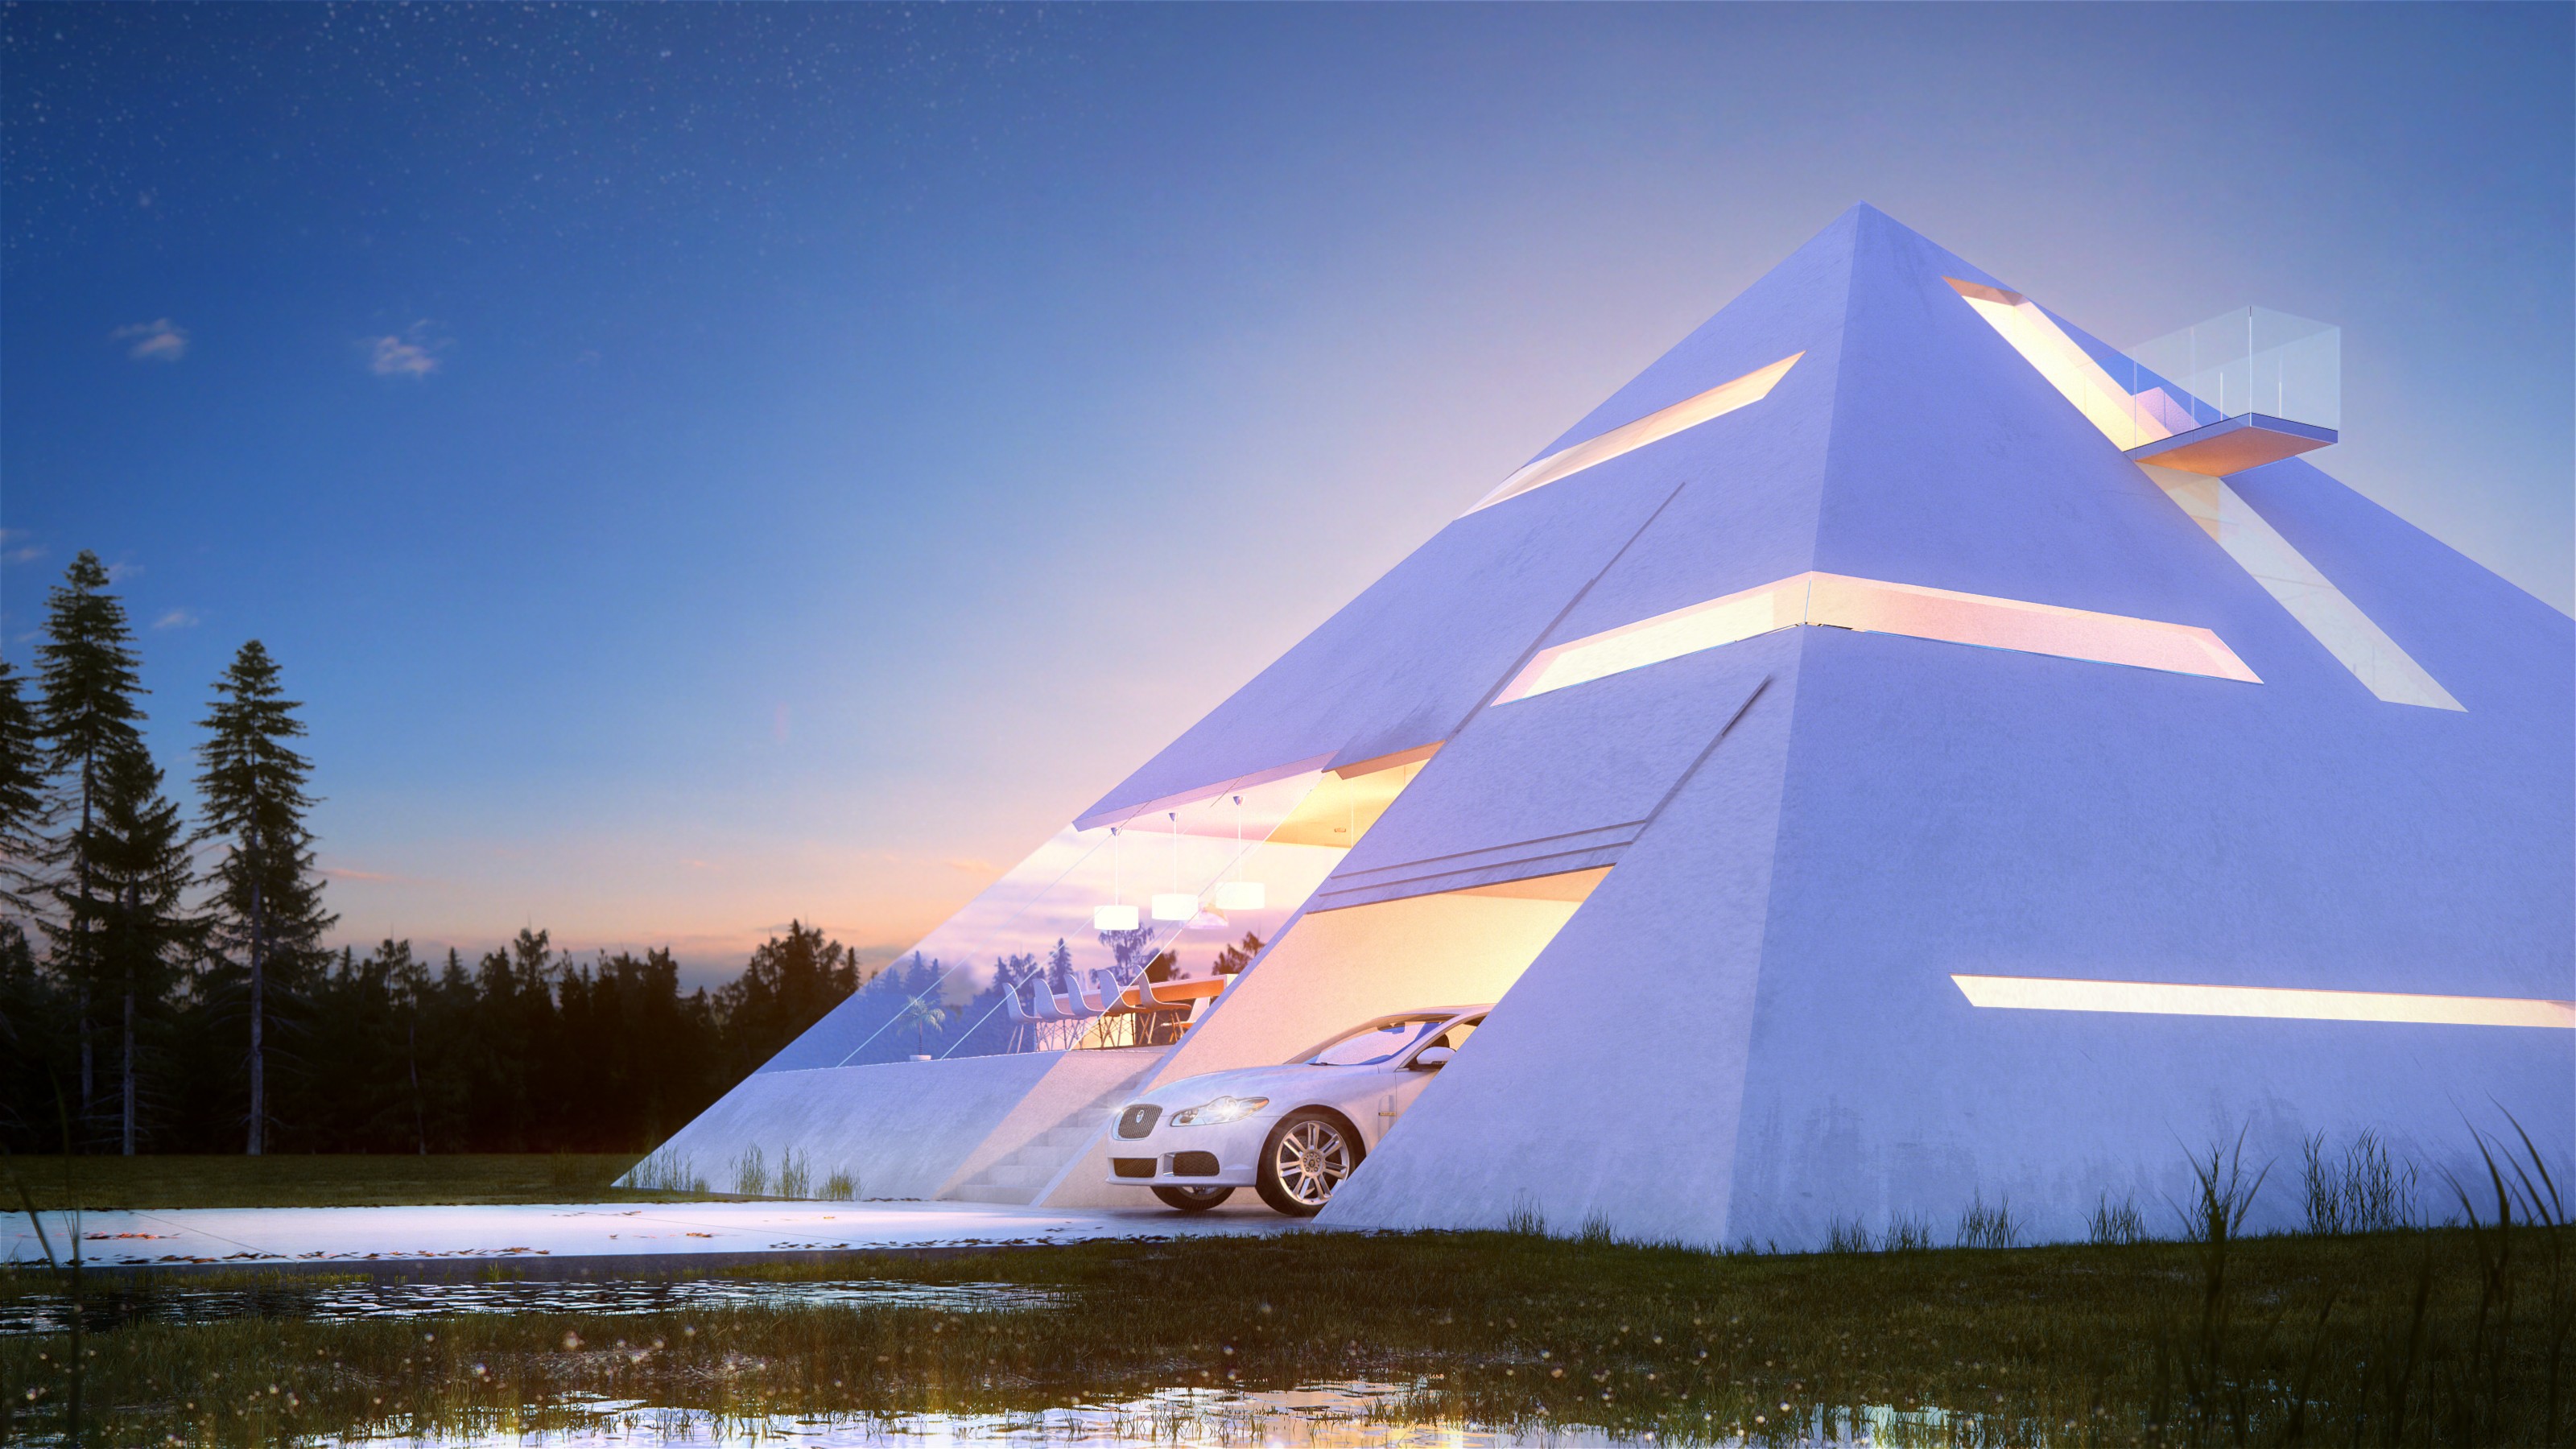 Futuristic pyramid house